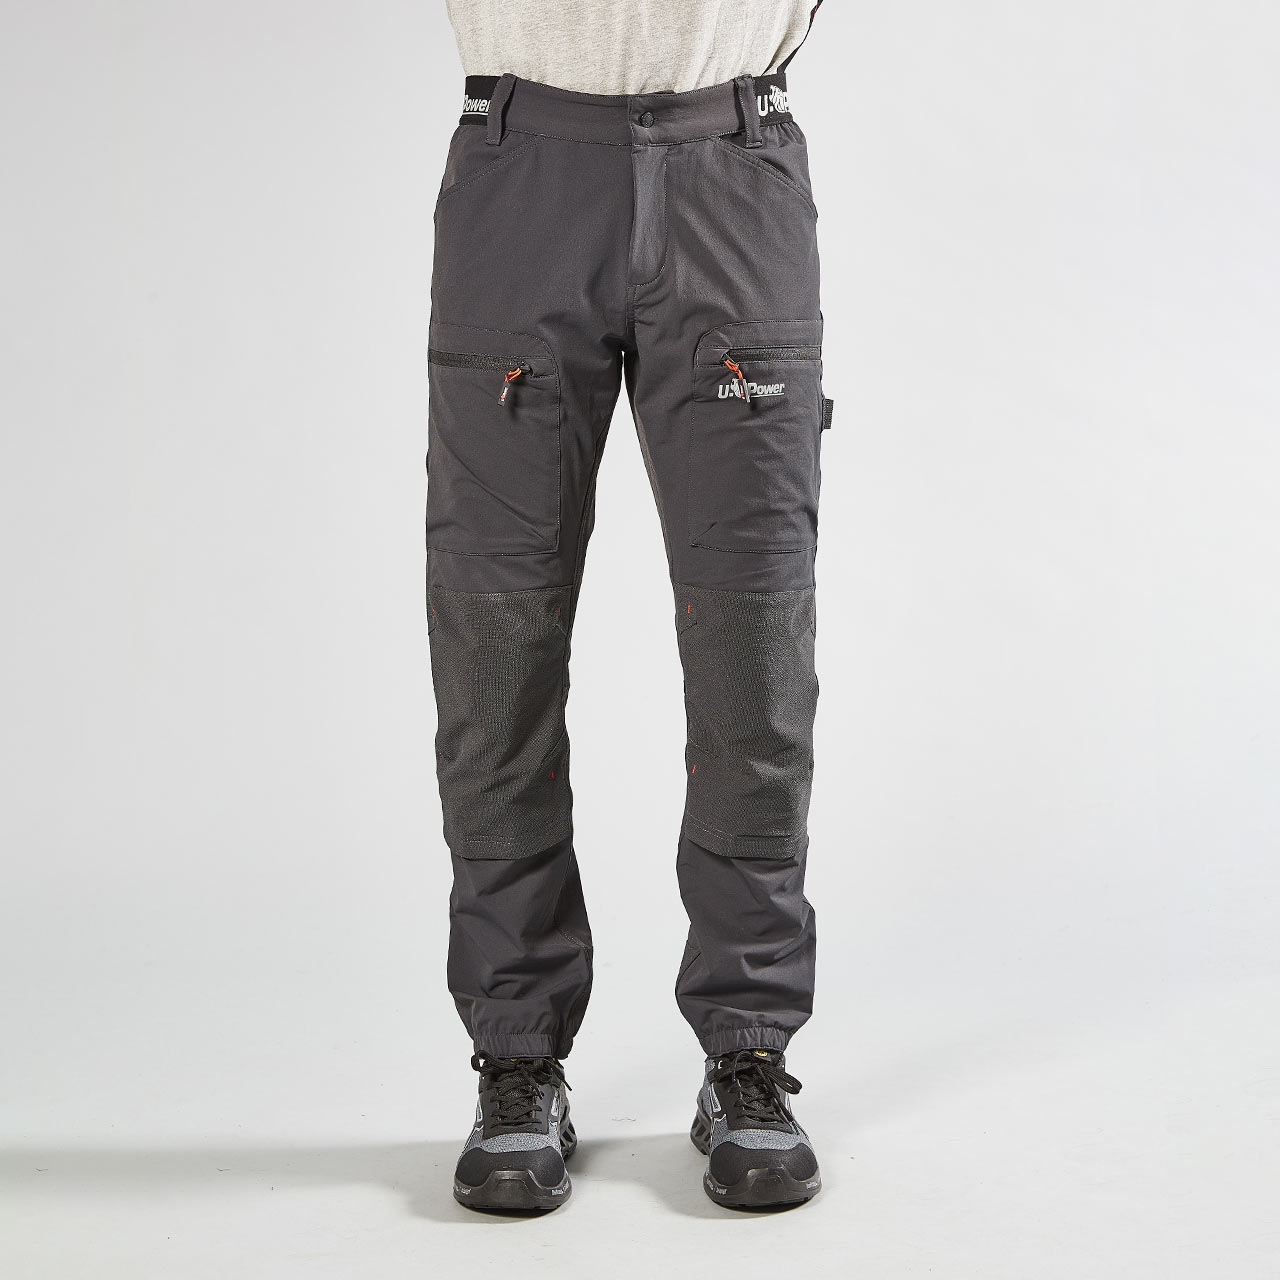 pantalone da lavoro upower modello harmony colore asphalt grey indossato fronte